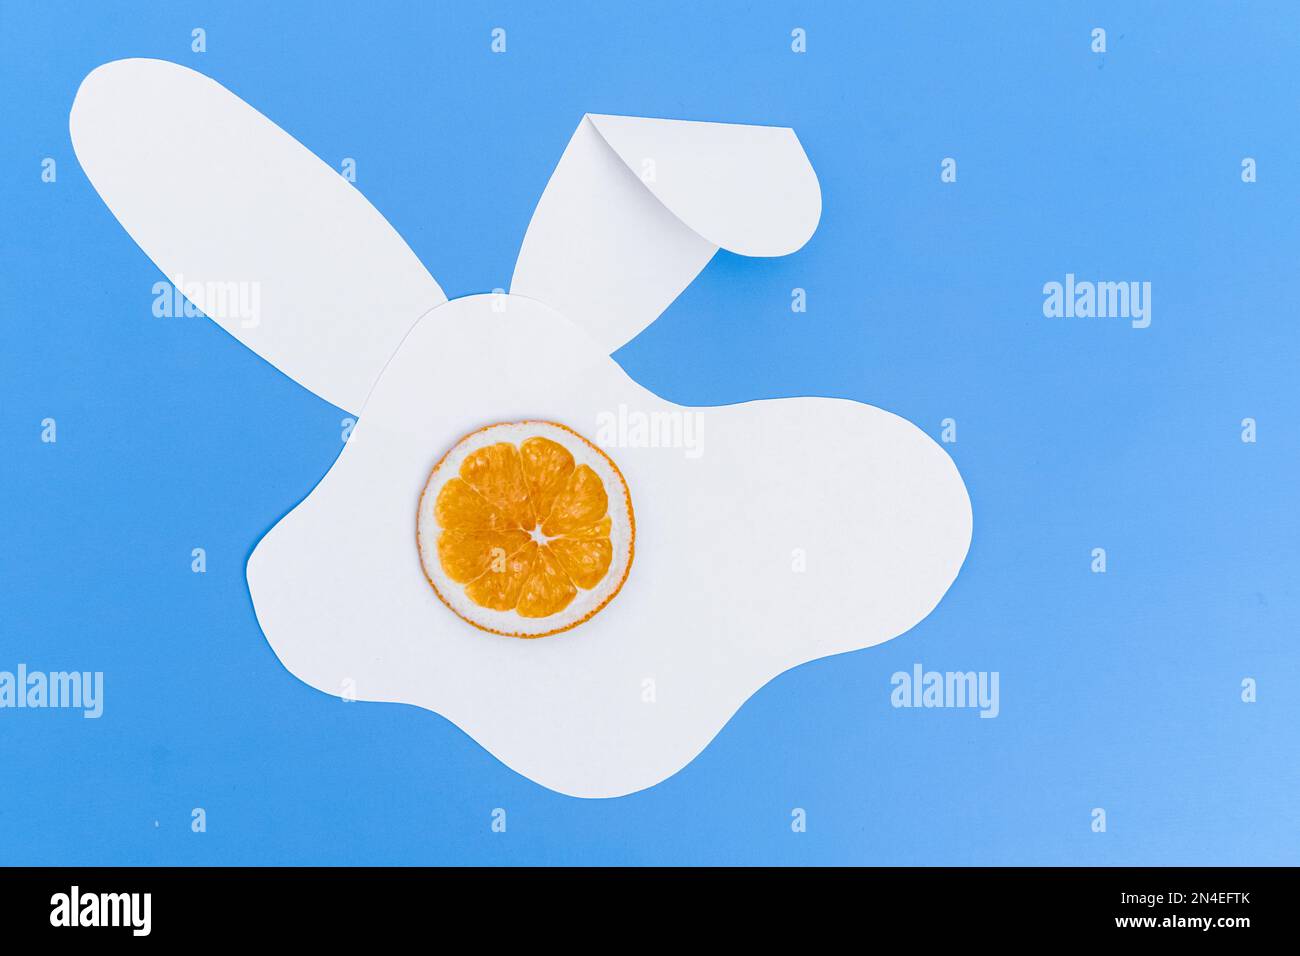 Mise en page créative composée d'une silhouette de lapin en papier blanc et d'une tasse d'orange séchée sur fond bleu. Concept de vacances de printemps minimales. Banque D'Images